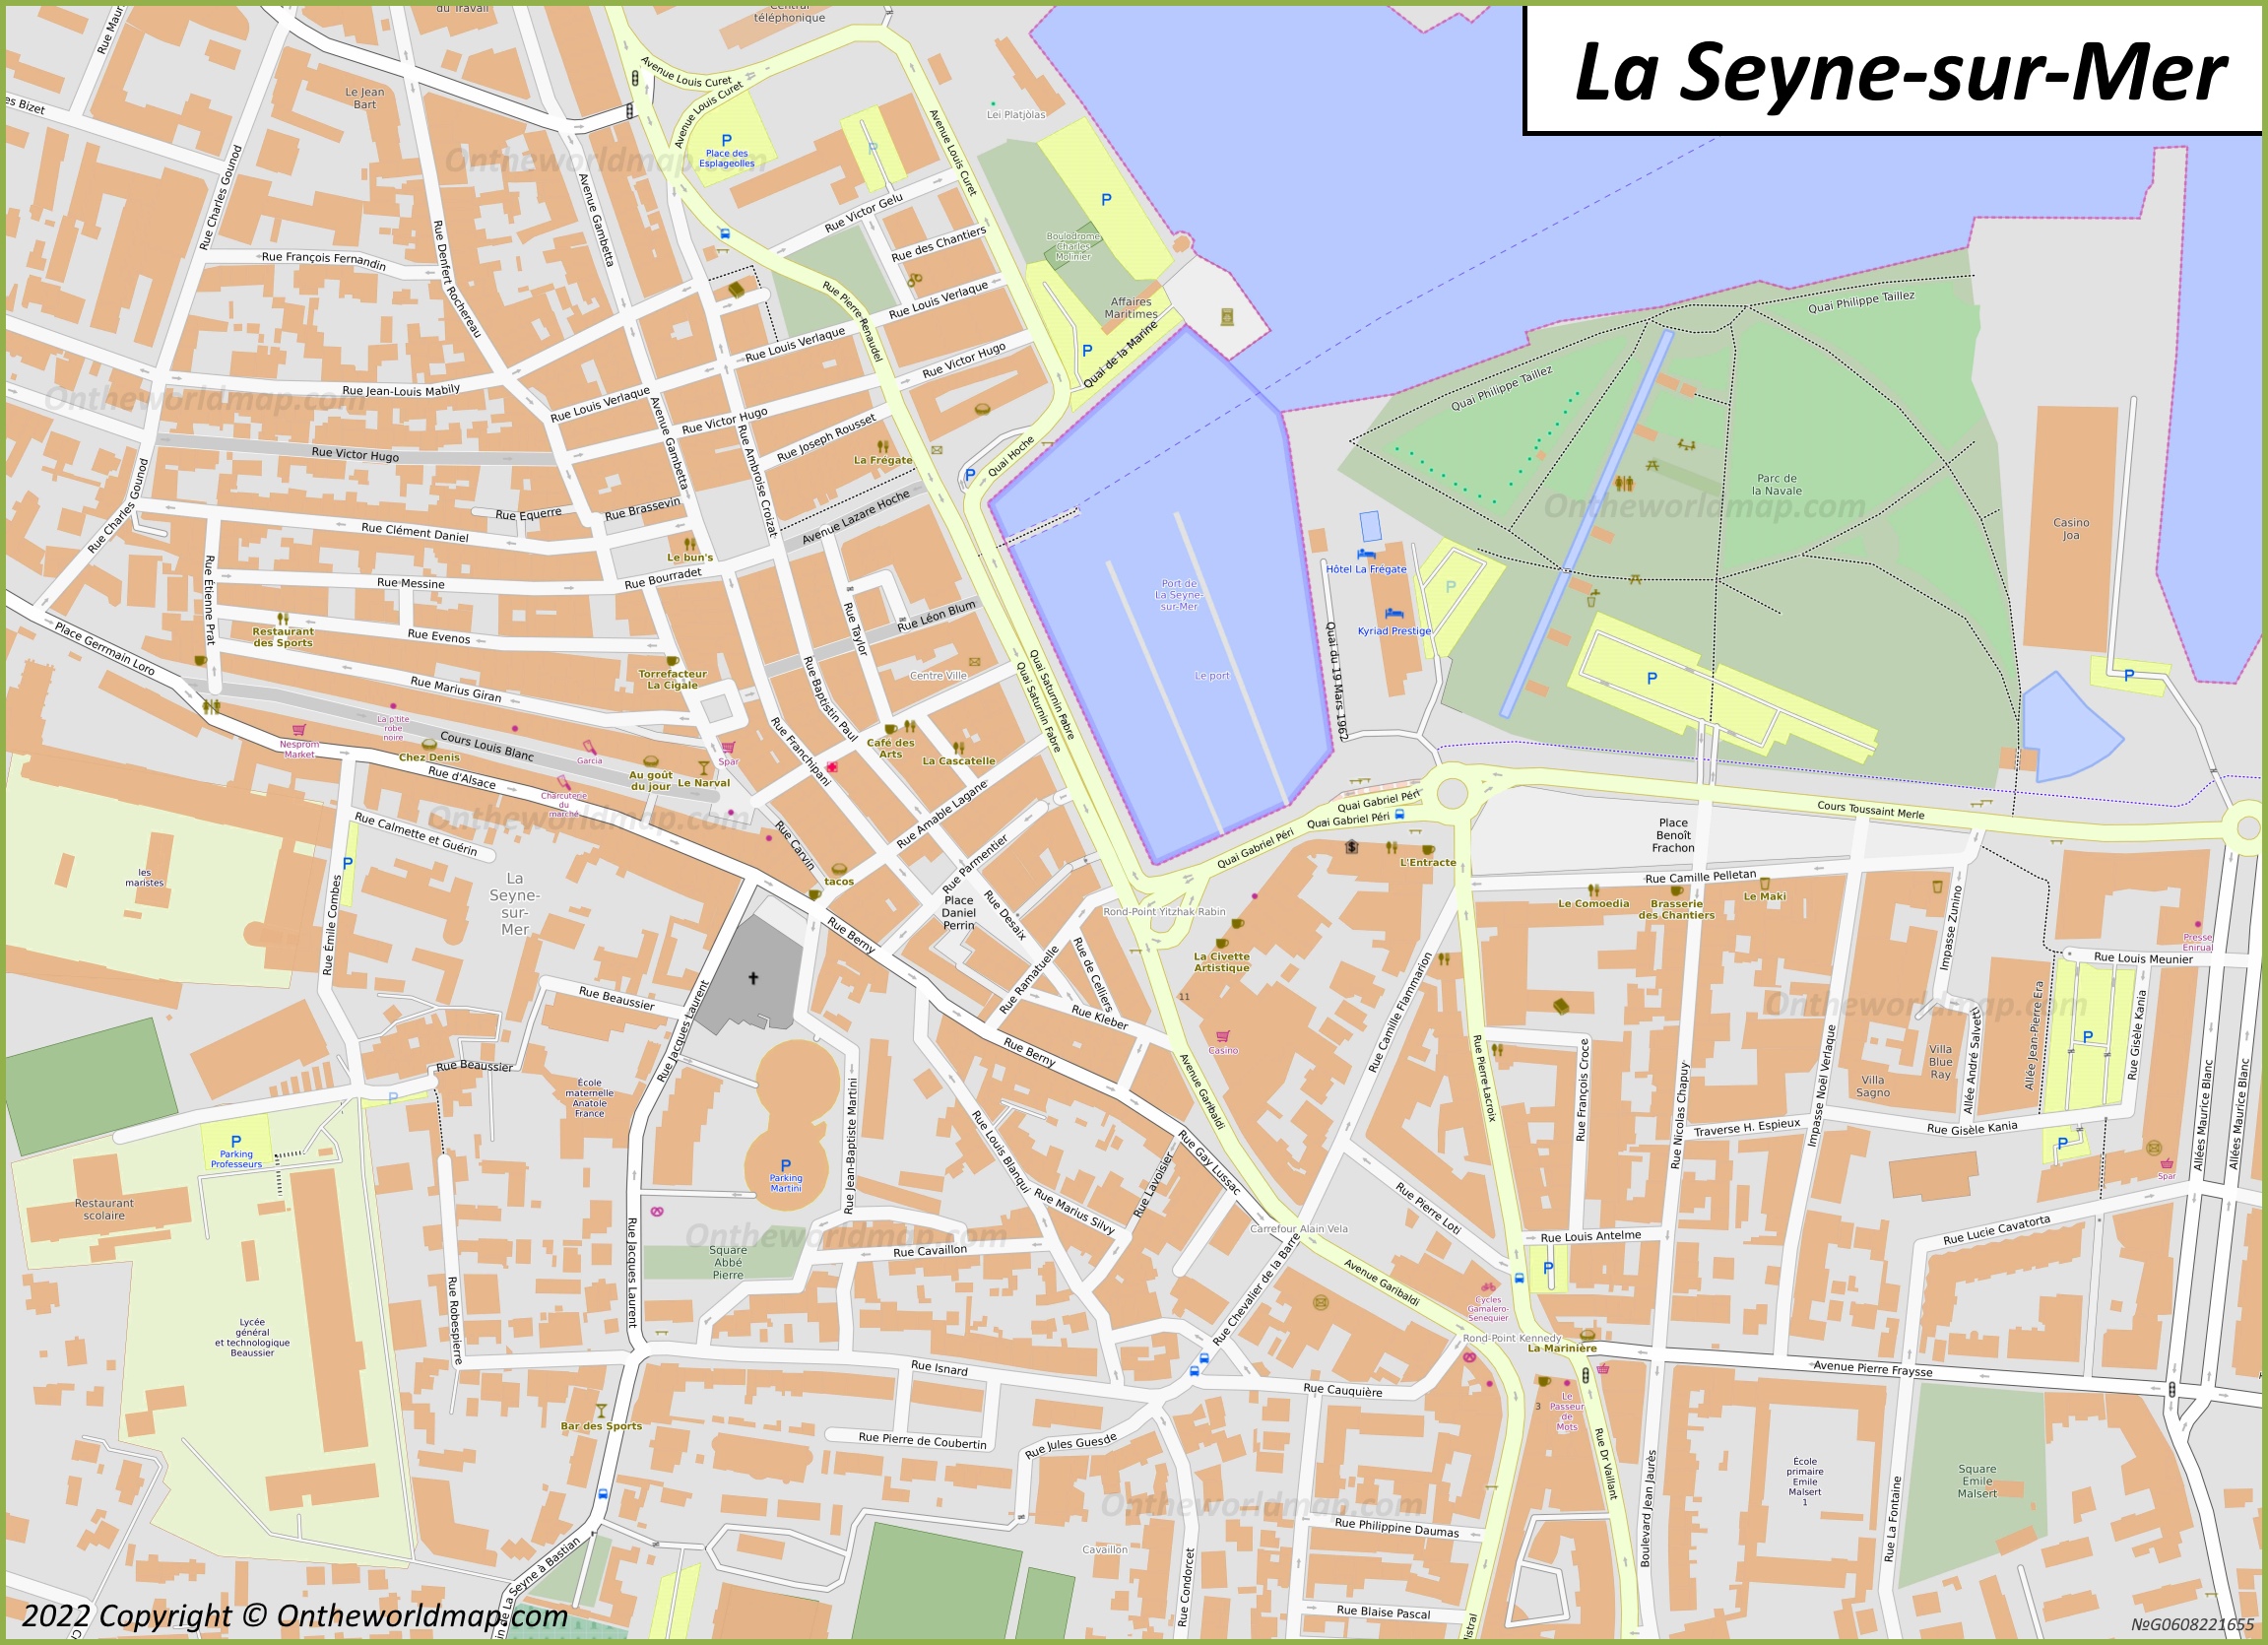 La Seyne-sur-Mer City Centre Map